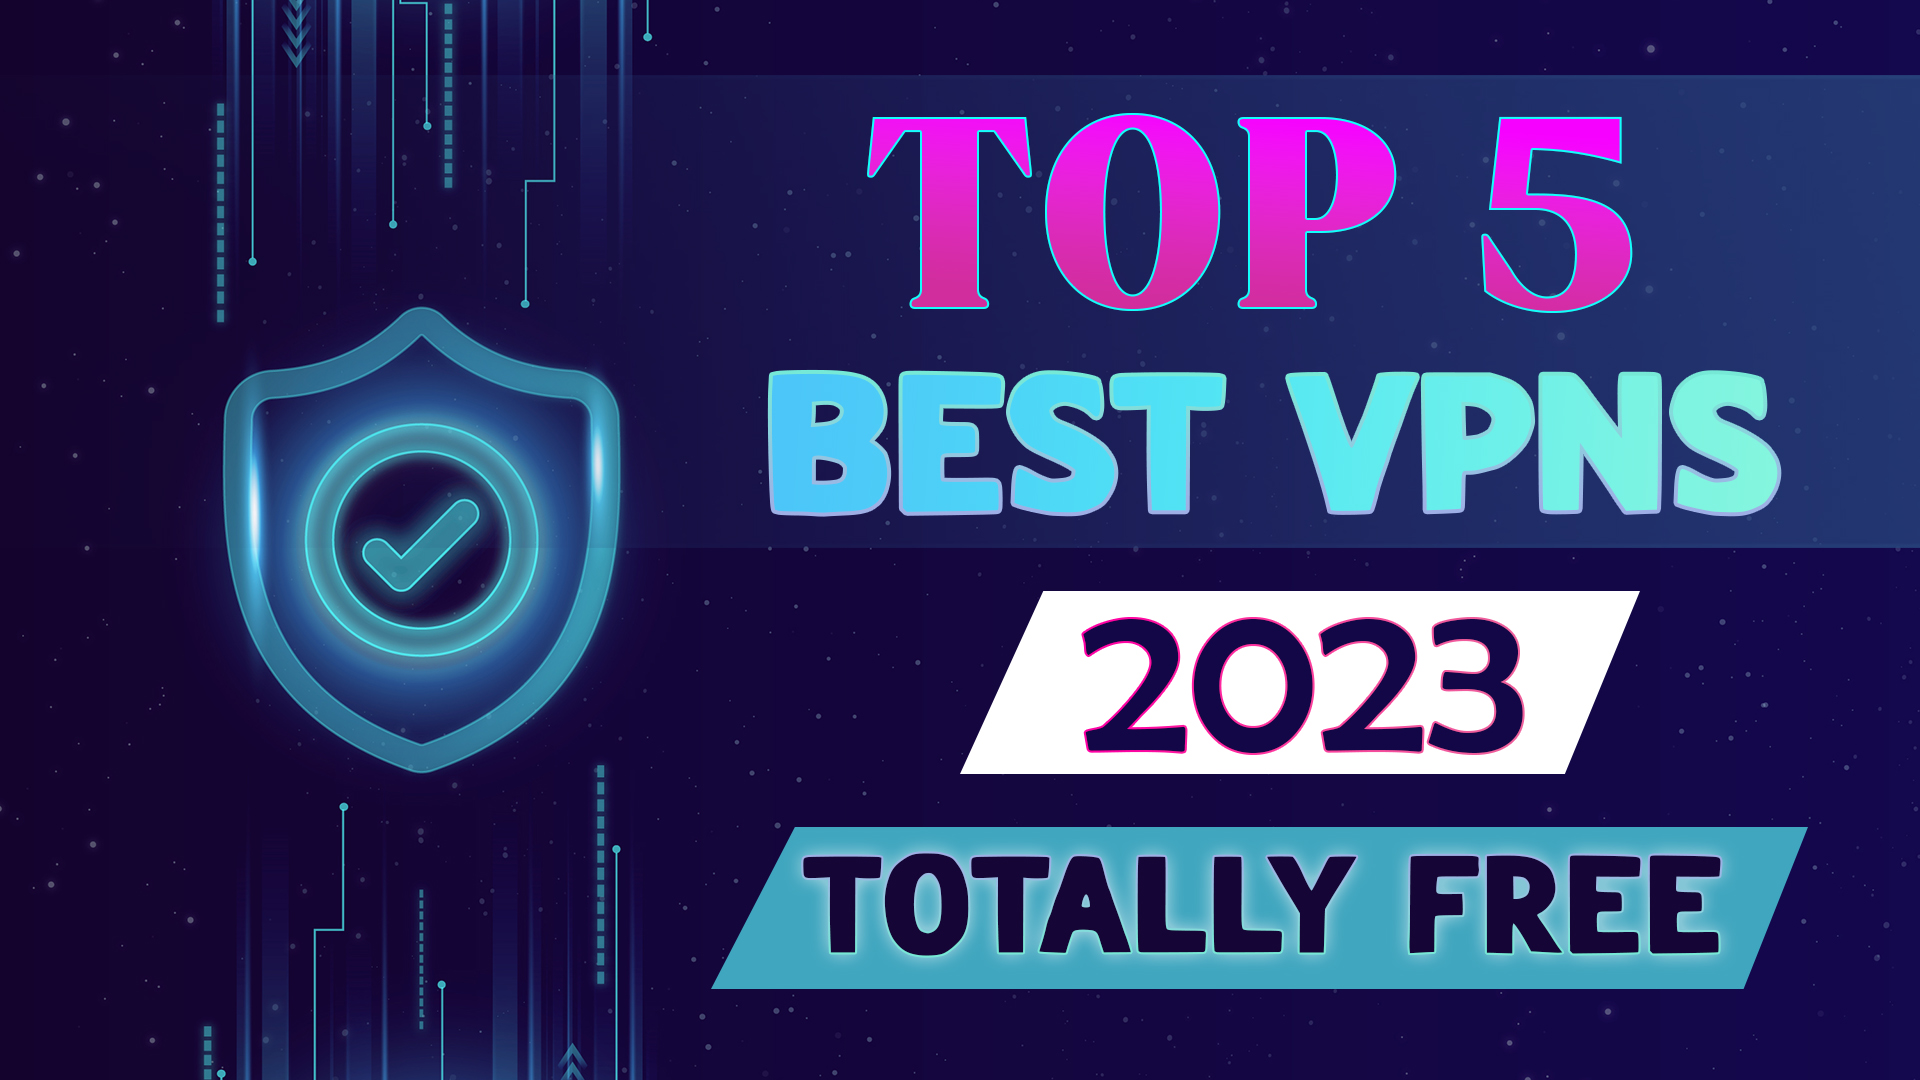 Top 5 Best VPNs In 2023 Faisal Shabbir